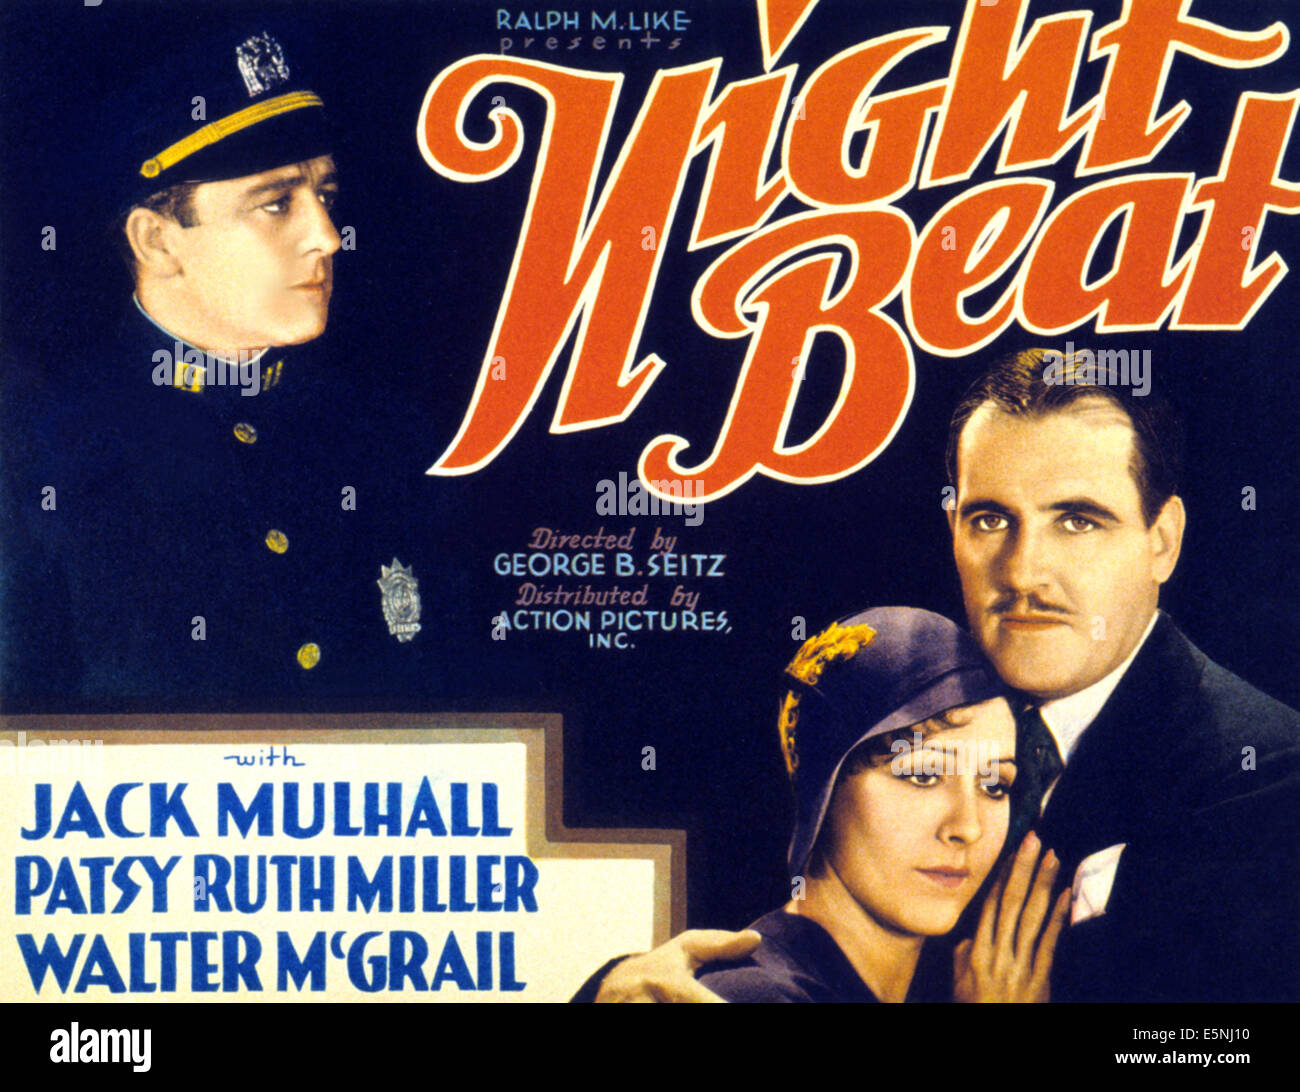 Nuit BEAT, à gauche : Jack Mulhall, en bas à droite de l-r : Patsy Ruth Miller, Walter McGrail sur le titre lobbycard, 1931. Banque D'Images